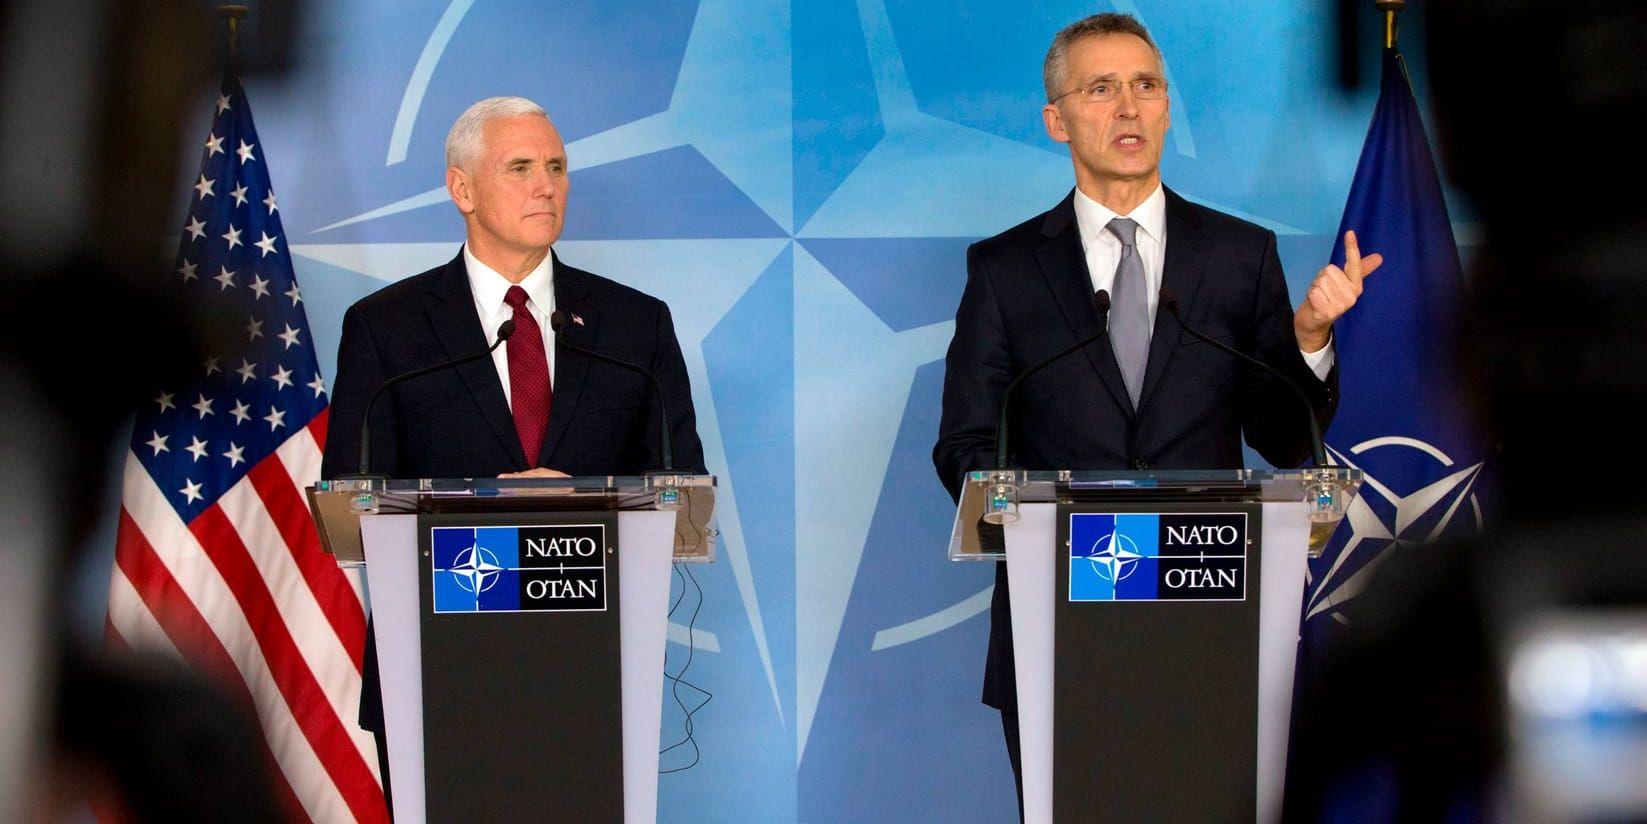 USA:s vicepresident Mike Pence (vänster) vill att alla Nato-länder har en försvarsbudget som motsvarar två procent av BNP. Natos generalsekreterare Jens Stoltenberg (höger) tycker att säkerheten måste prioriteras. Här talar ledarna vid en pressträff i måndags, efter Pence besök vid Nato-högkvarteret i Bryssel.